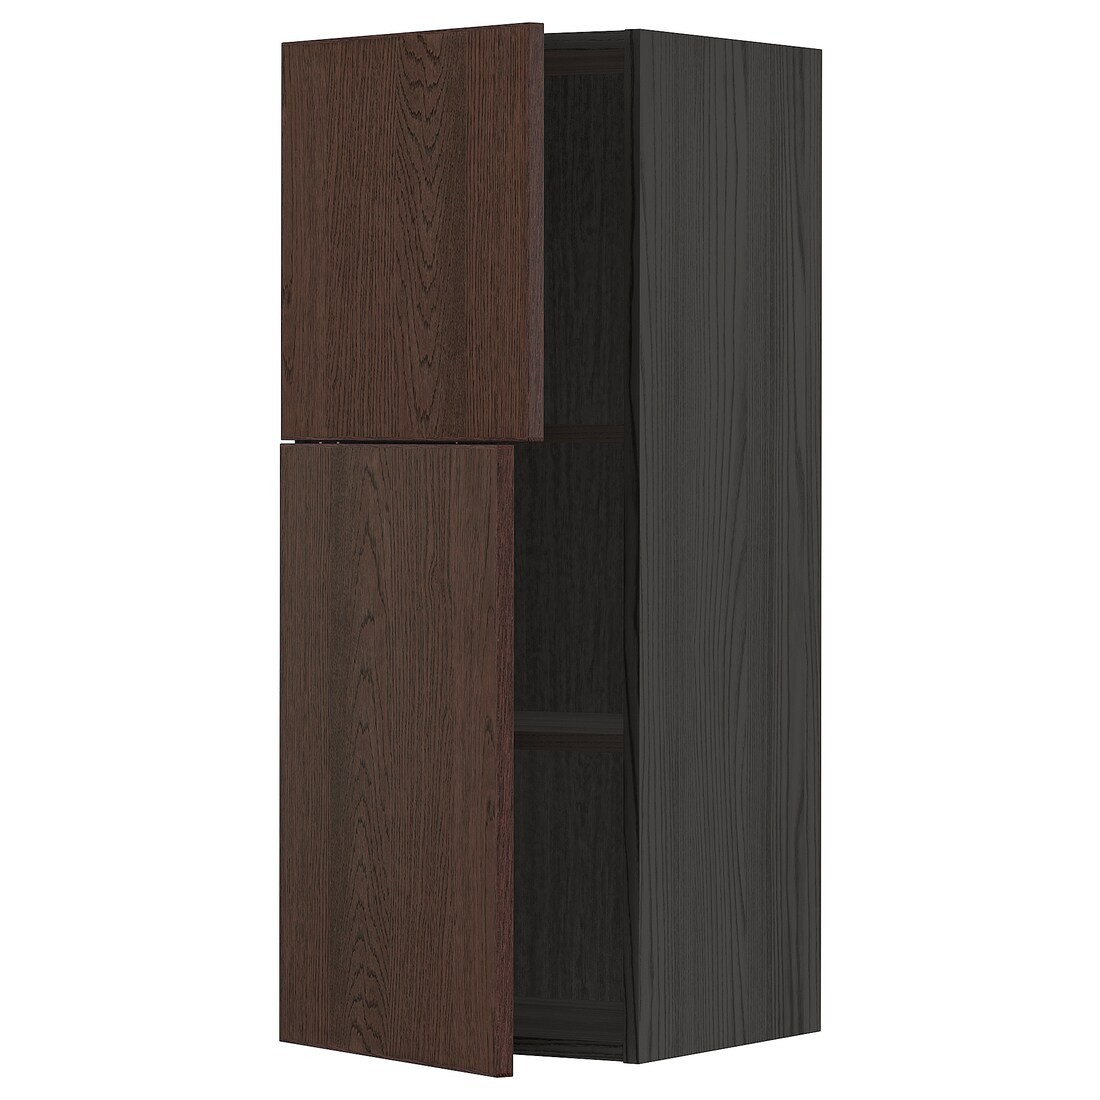 METOD МЕТОД Навесной шкаф с полками / 2 дверцы, черный / Sinarp коричневый, 40x100 см